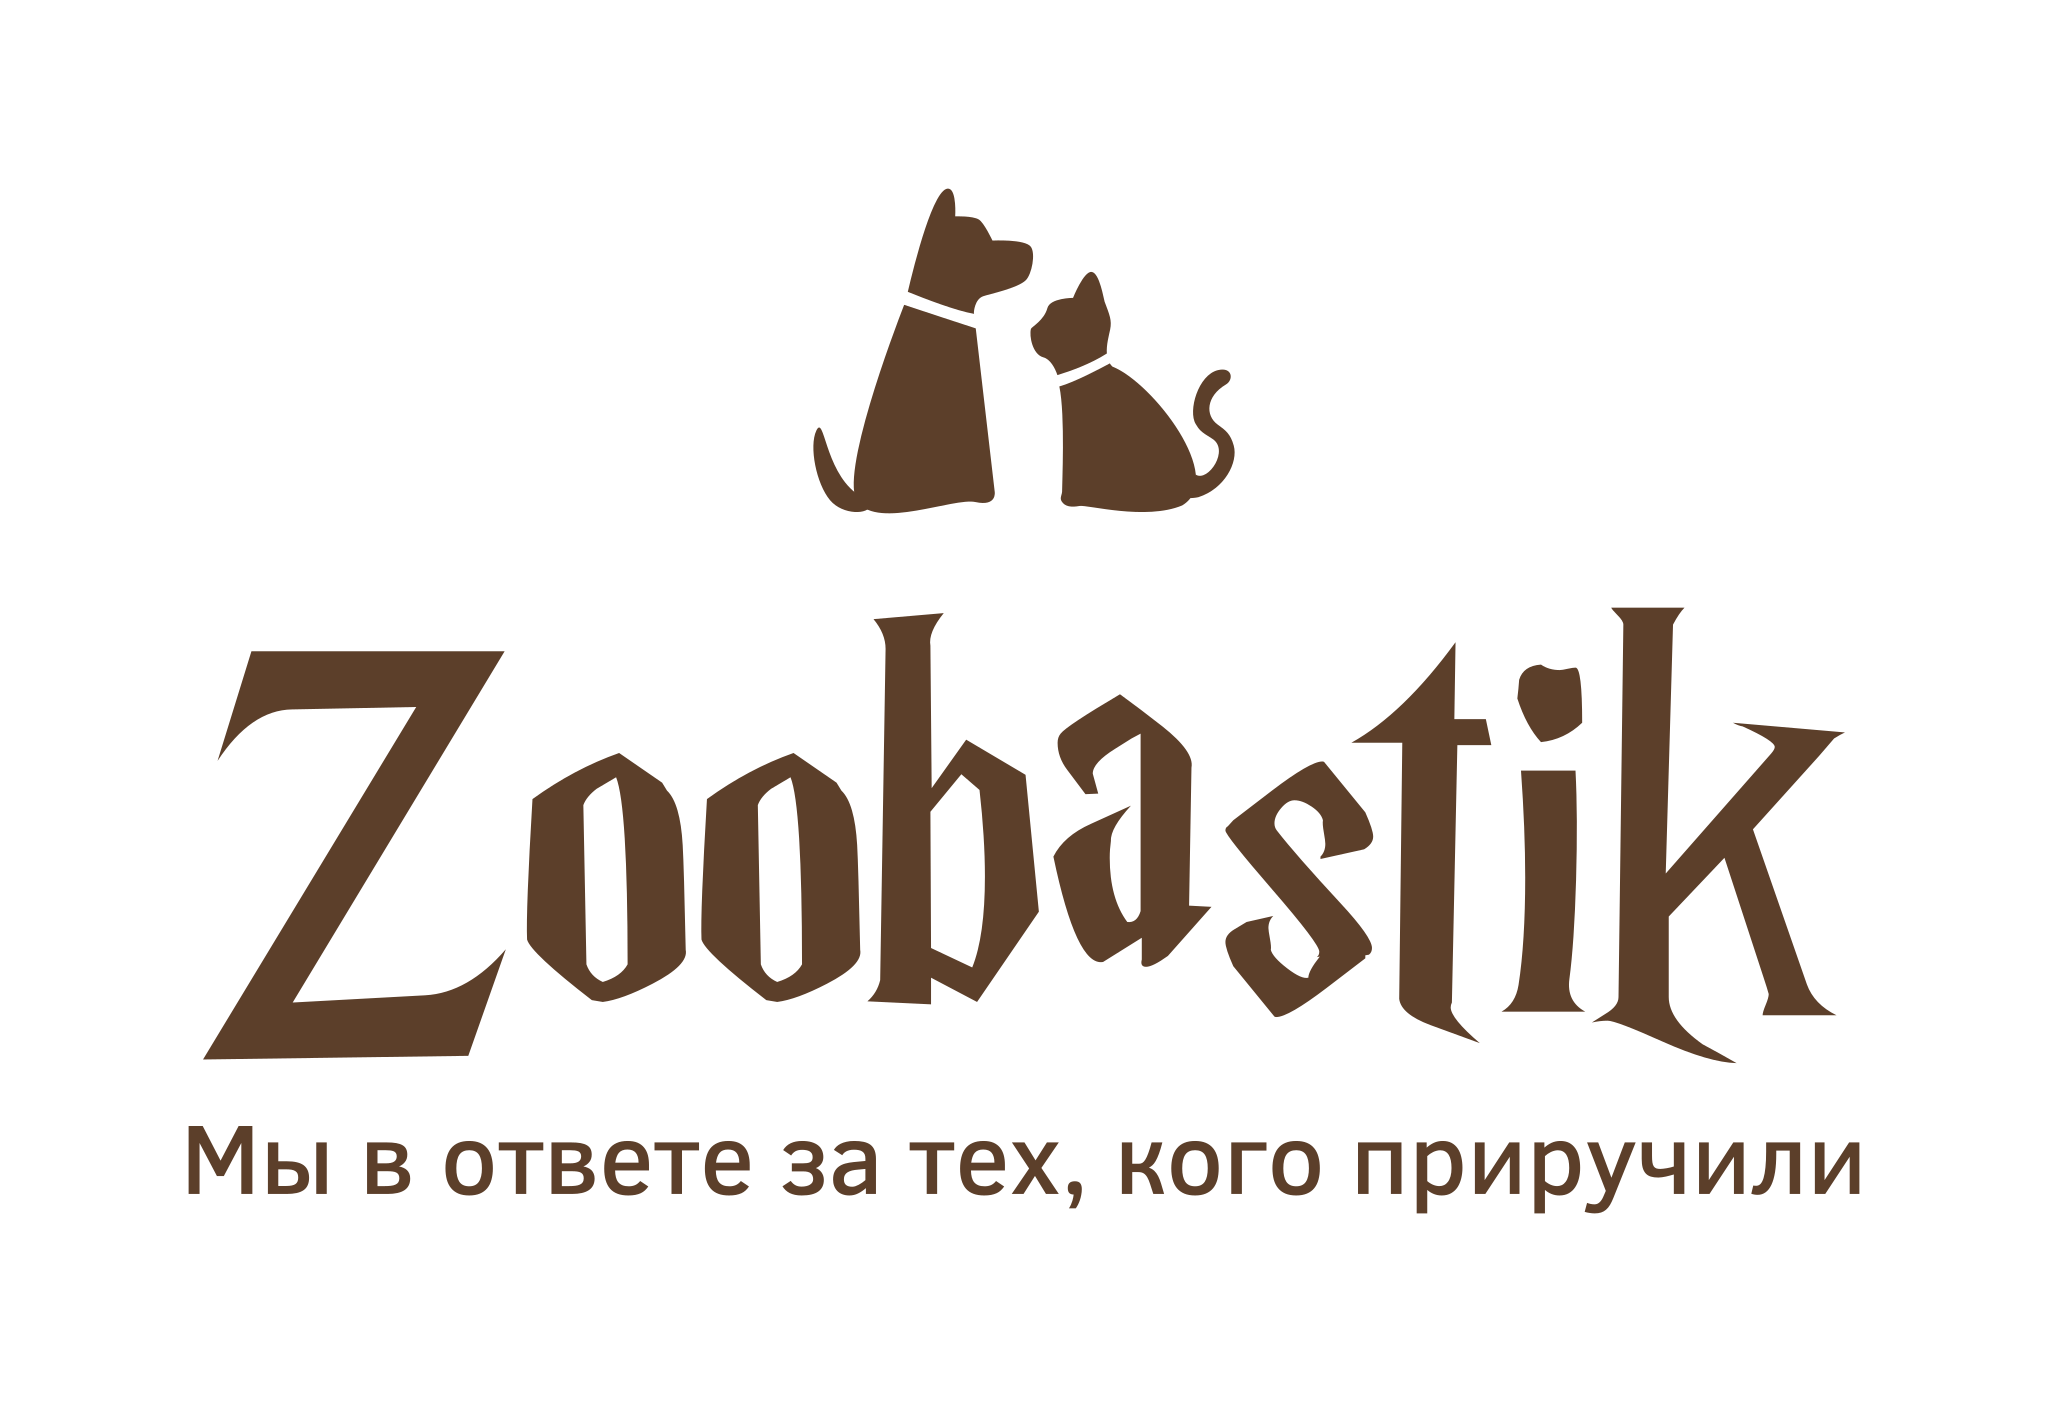 Zoobastik.com